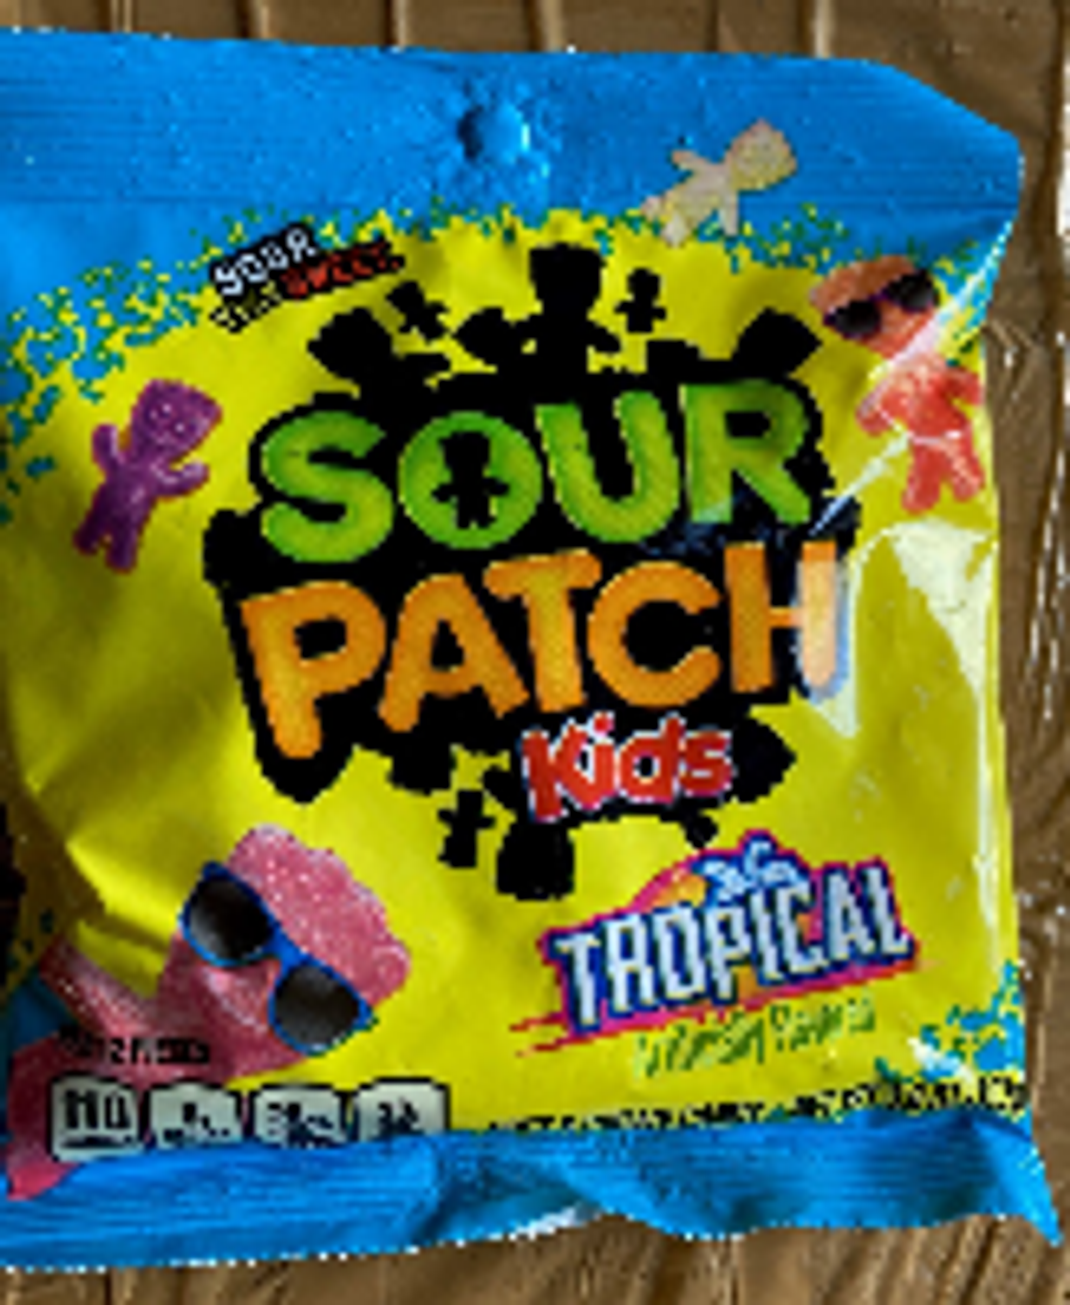 Bonbons der Marke Sour Patch Kids der Sorte Tropical.